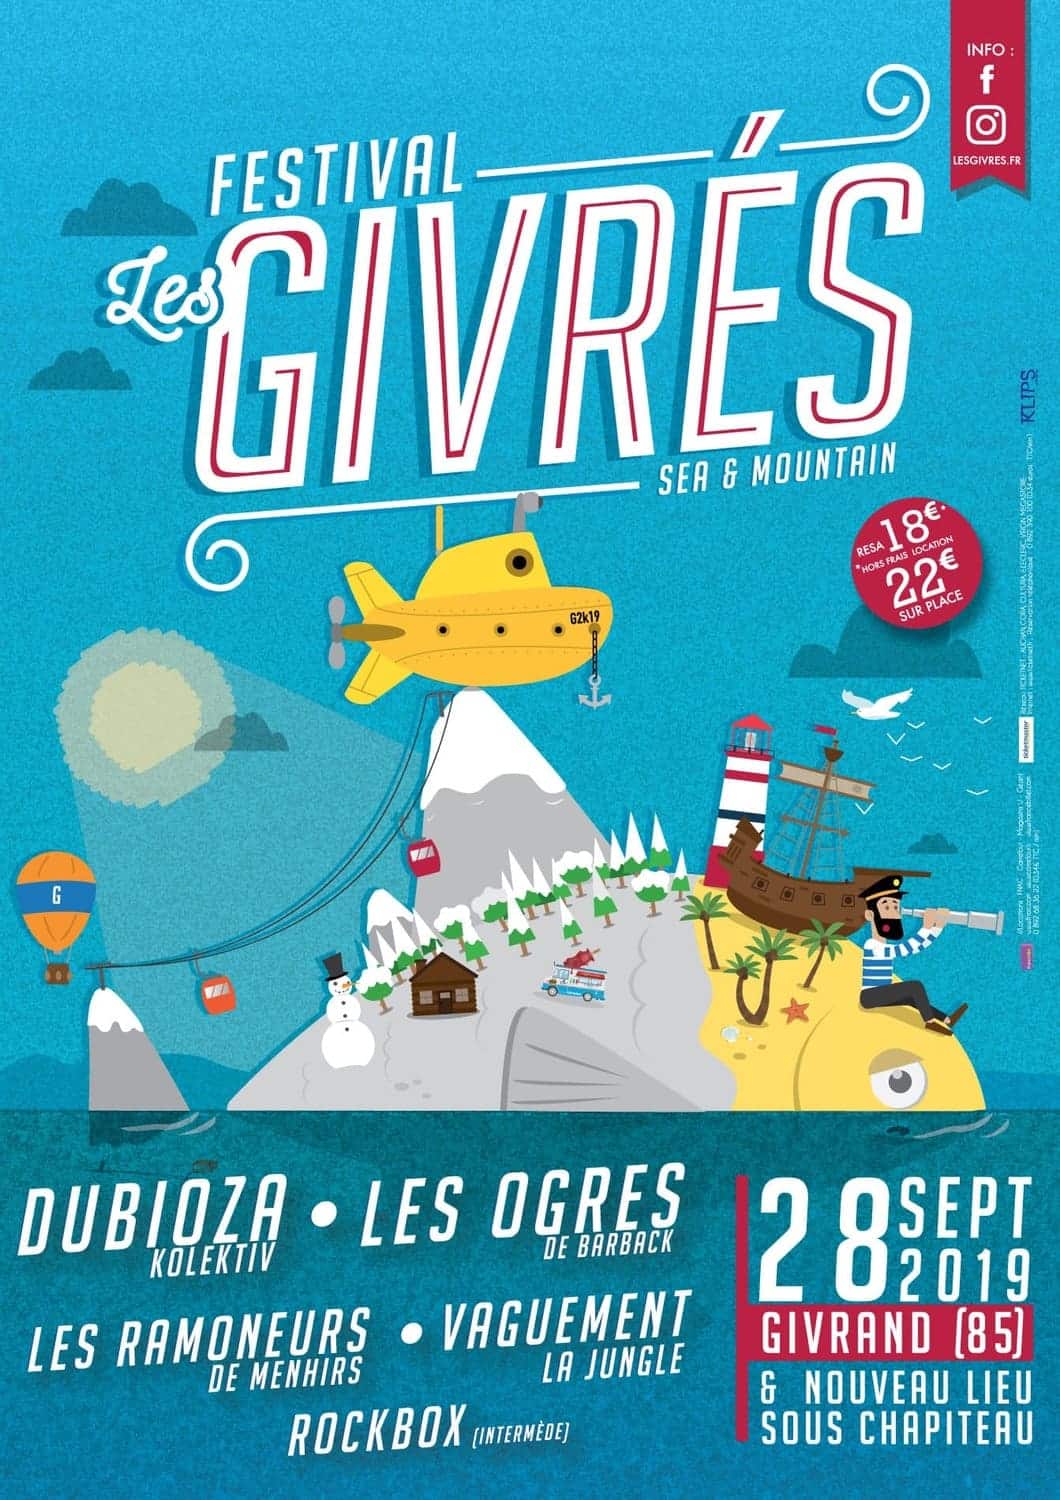 Affiche Festival Les Givrés 2019 - Givrand